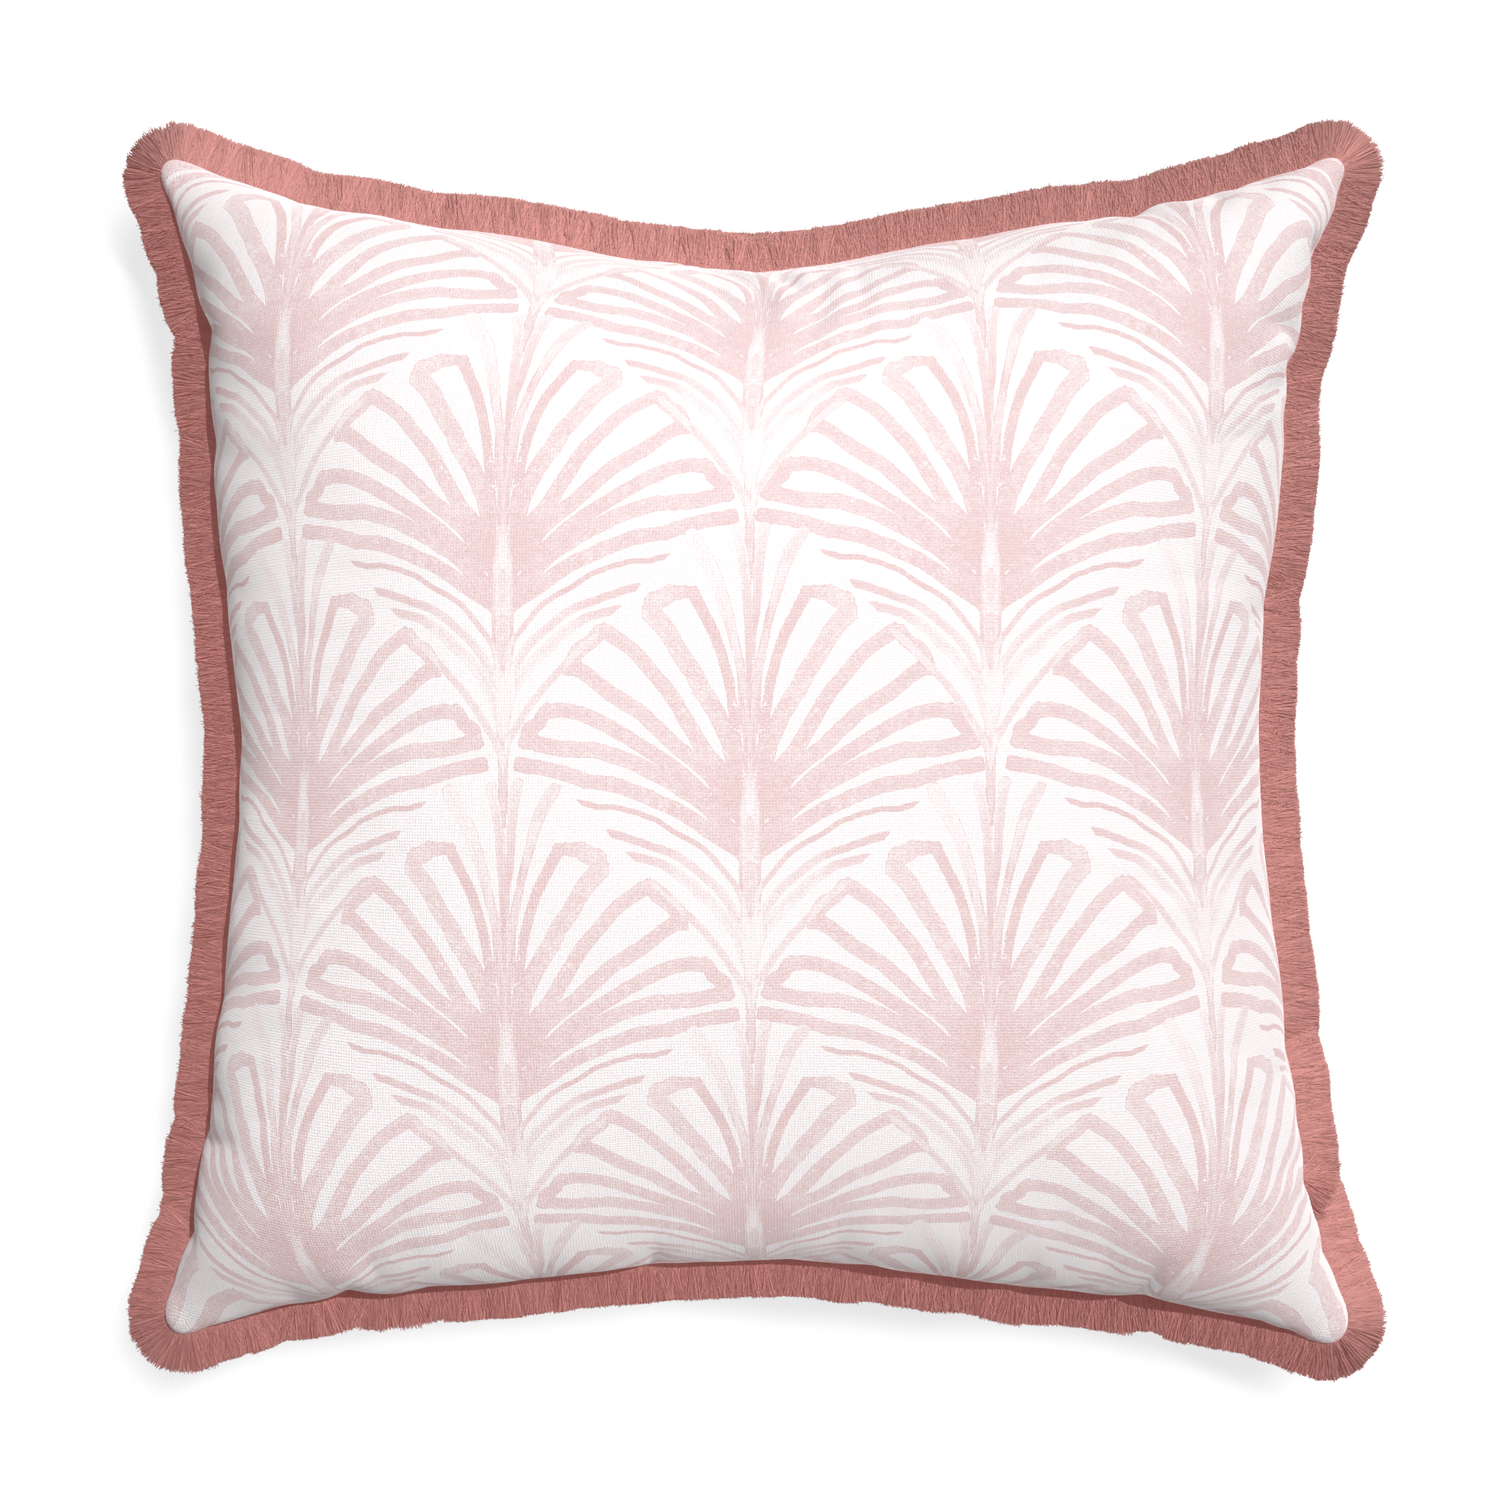 Euro-sham suzy rose custom pillow with d fringe on white background